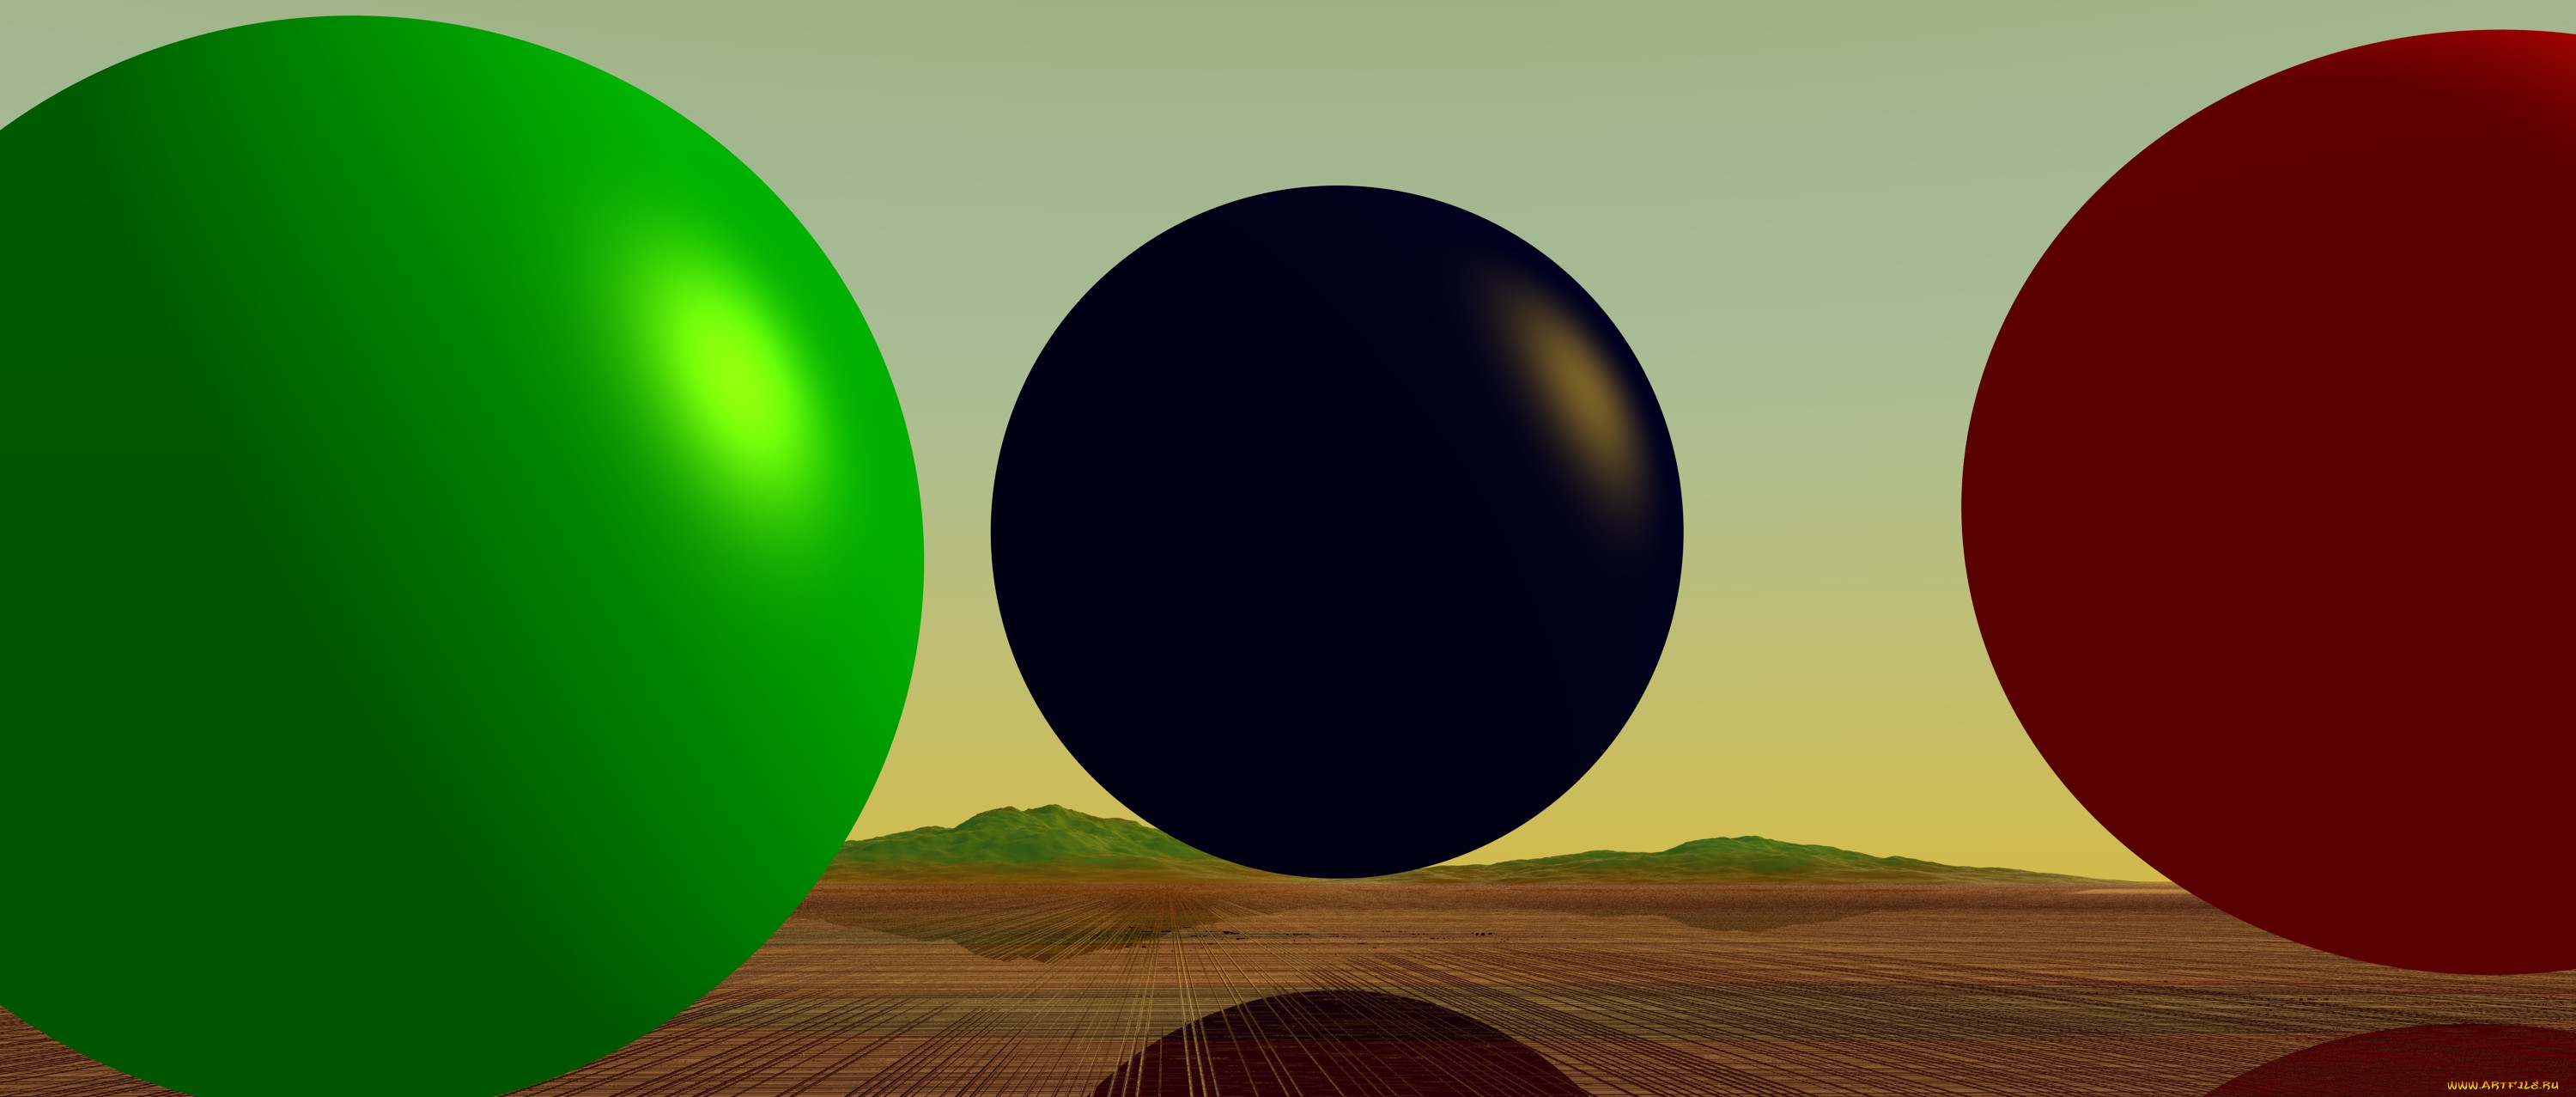 Шар Графика. Шар 3д рисунок. Фон шар геометрия. Моделирование поверхности земли возьмите небольшой шар или мяч. Меткий шар